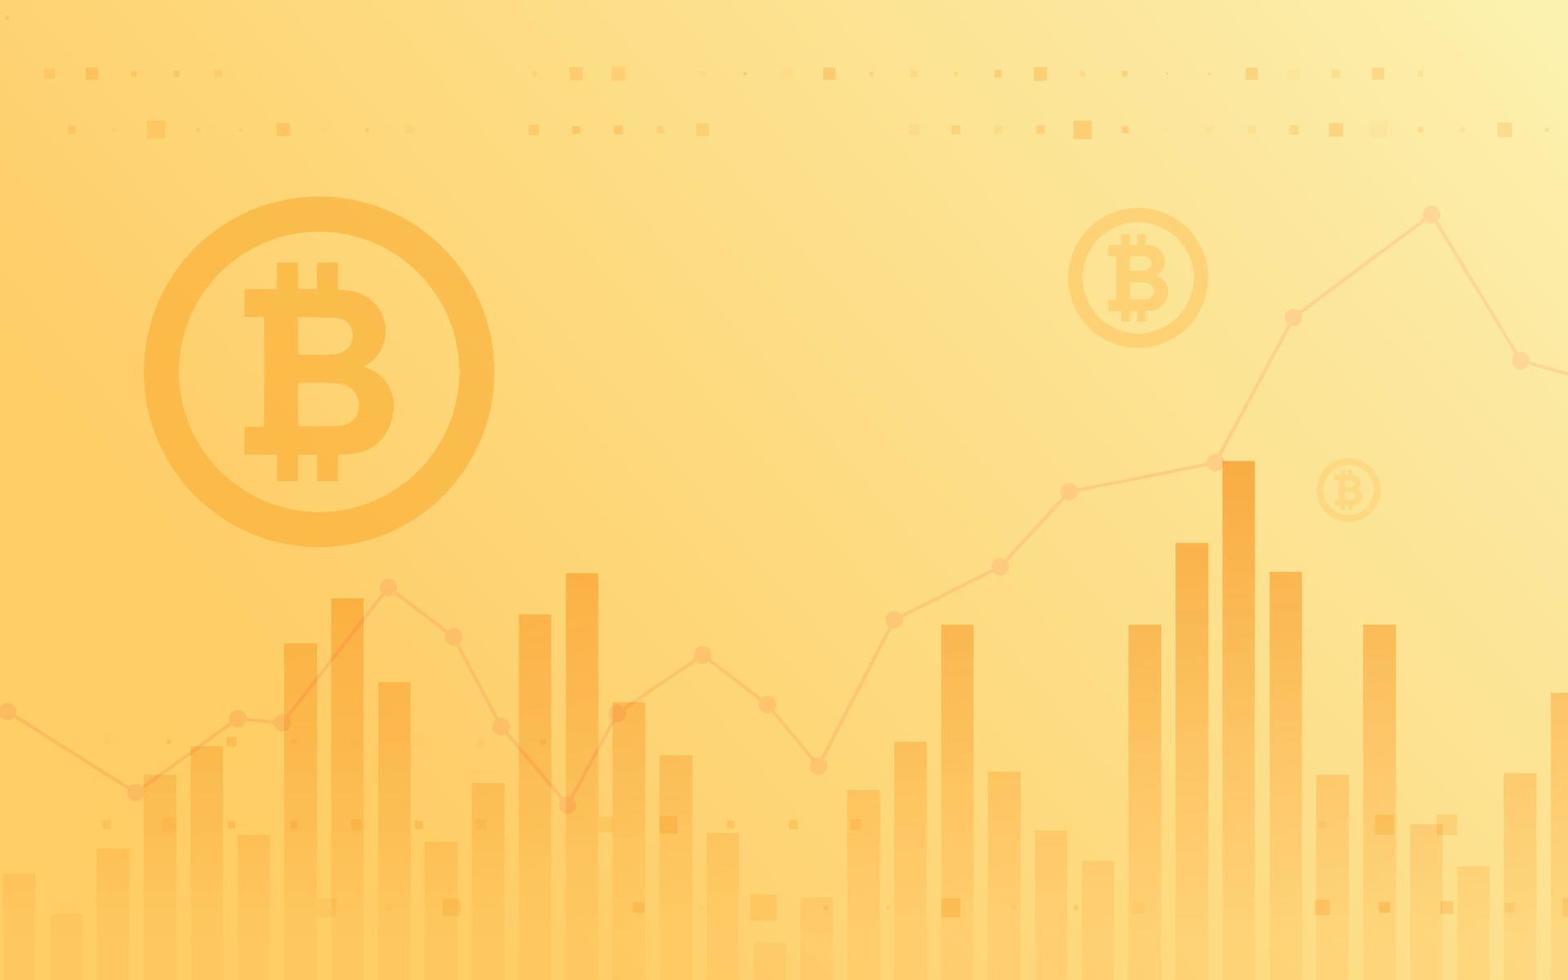 lichte en donkere achtergrond, bitcoin crypto valuta illustratie vector voor pagina, logo, kaart, banner, web en printen.